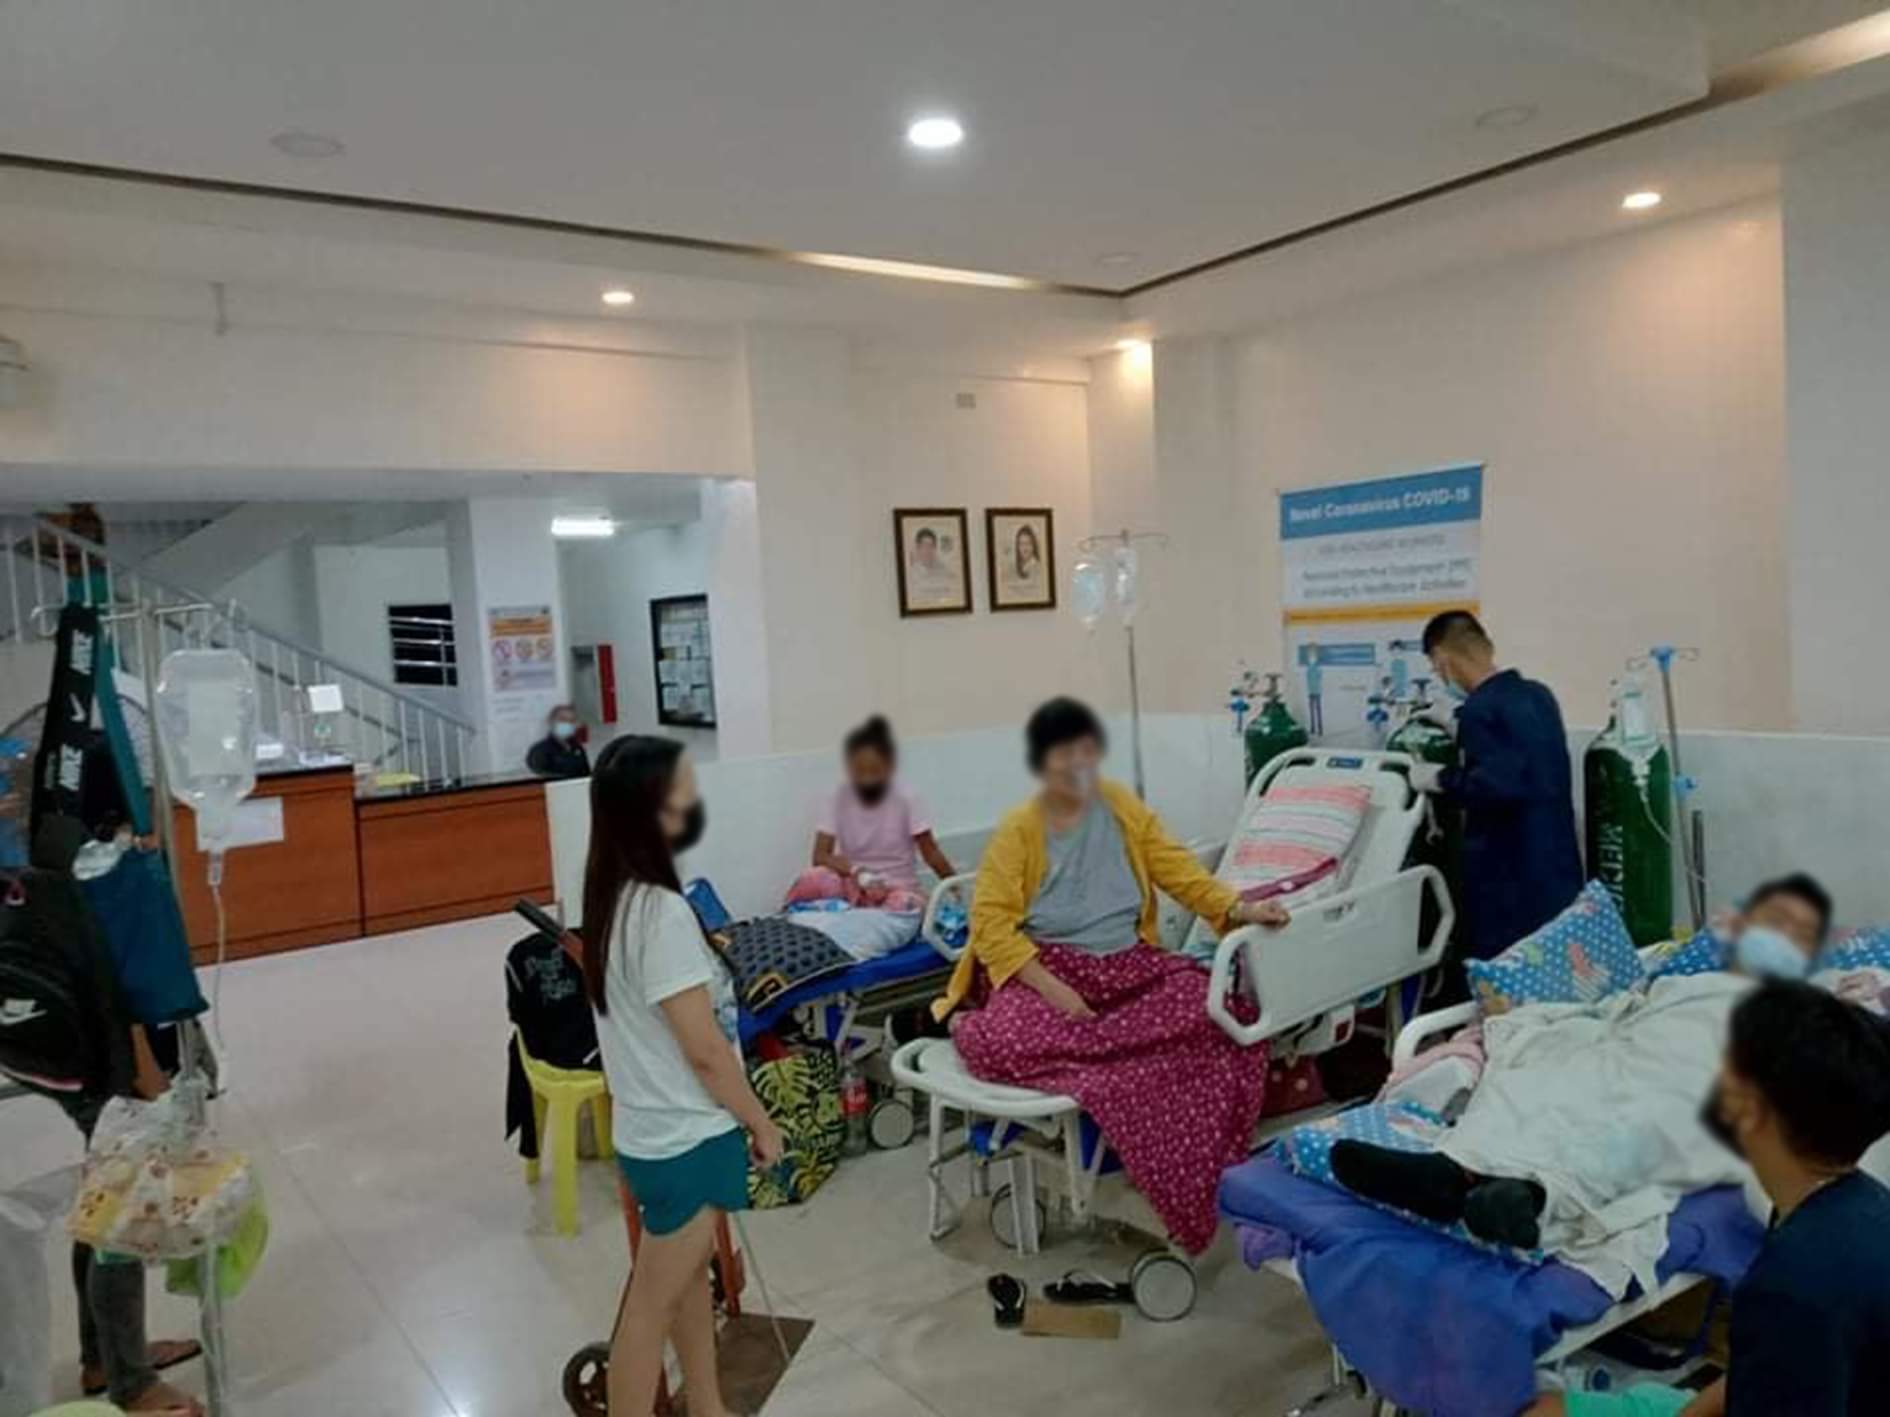 Ospital Ng Sjdm Nagpaliwanag Sa Kumalat Na Larawan Na Puno Ng Pasyente Ang Lobby Ng Ospital 4699